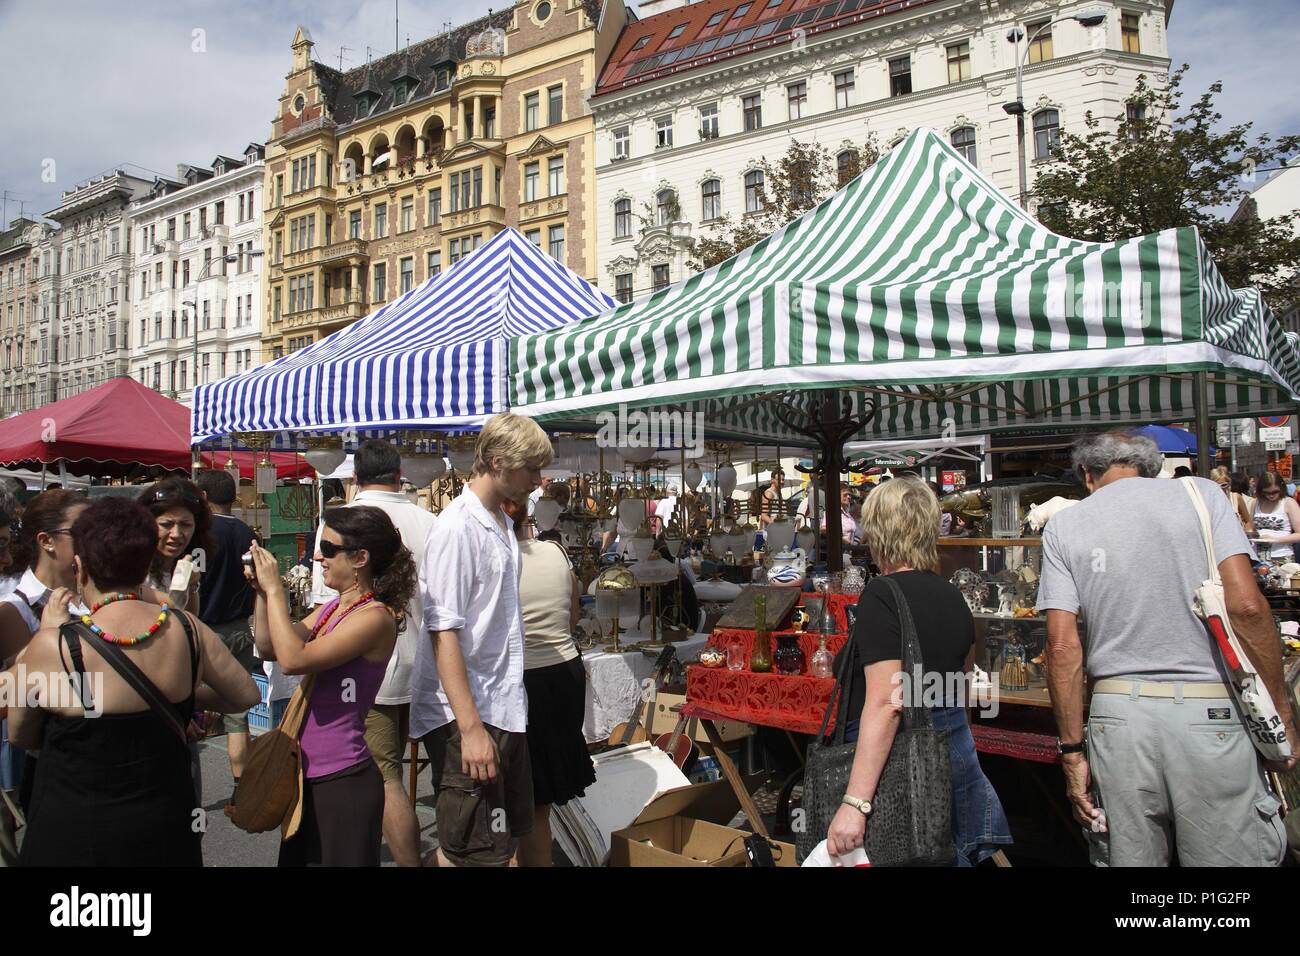 . Viena / Wien; Linke Wienzeile y Naschtmarkt (mercado de las pulgas) en donde todos los sábados se vende de todo. Stock Photo